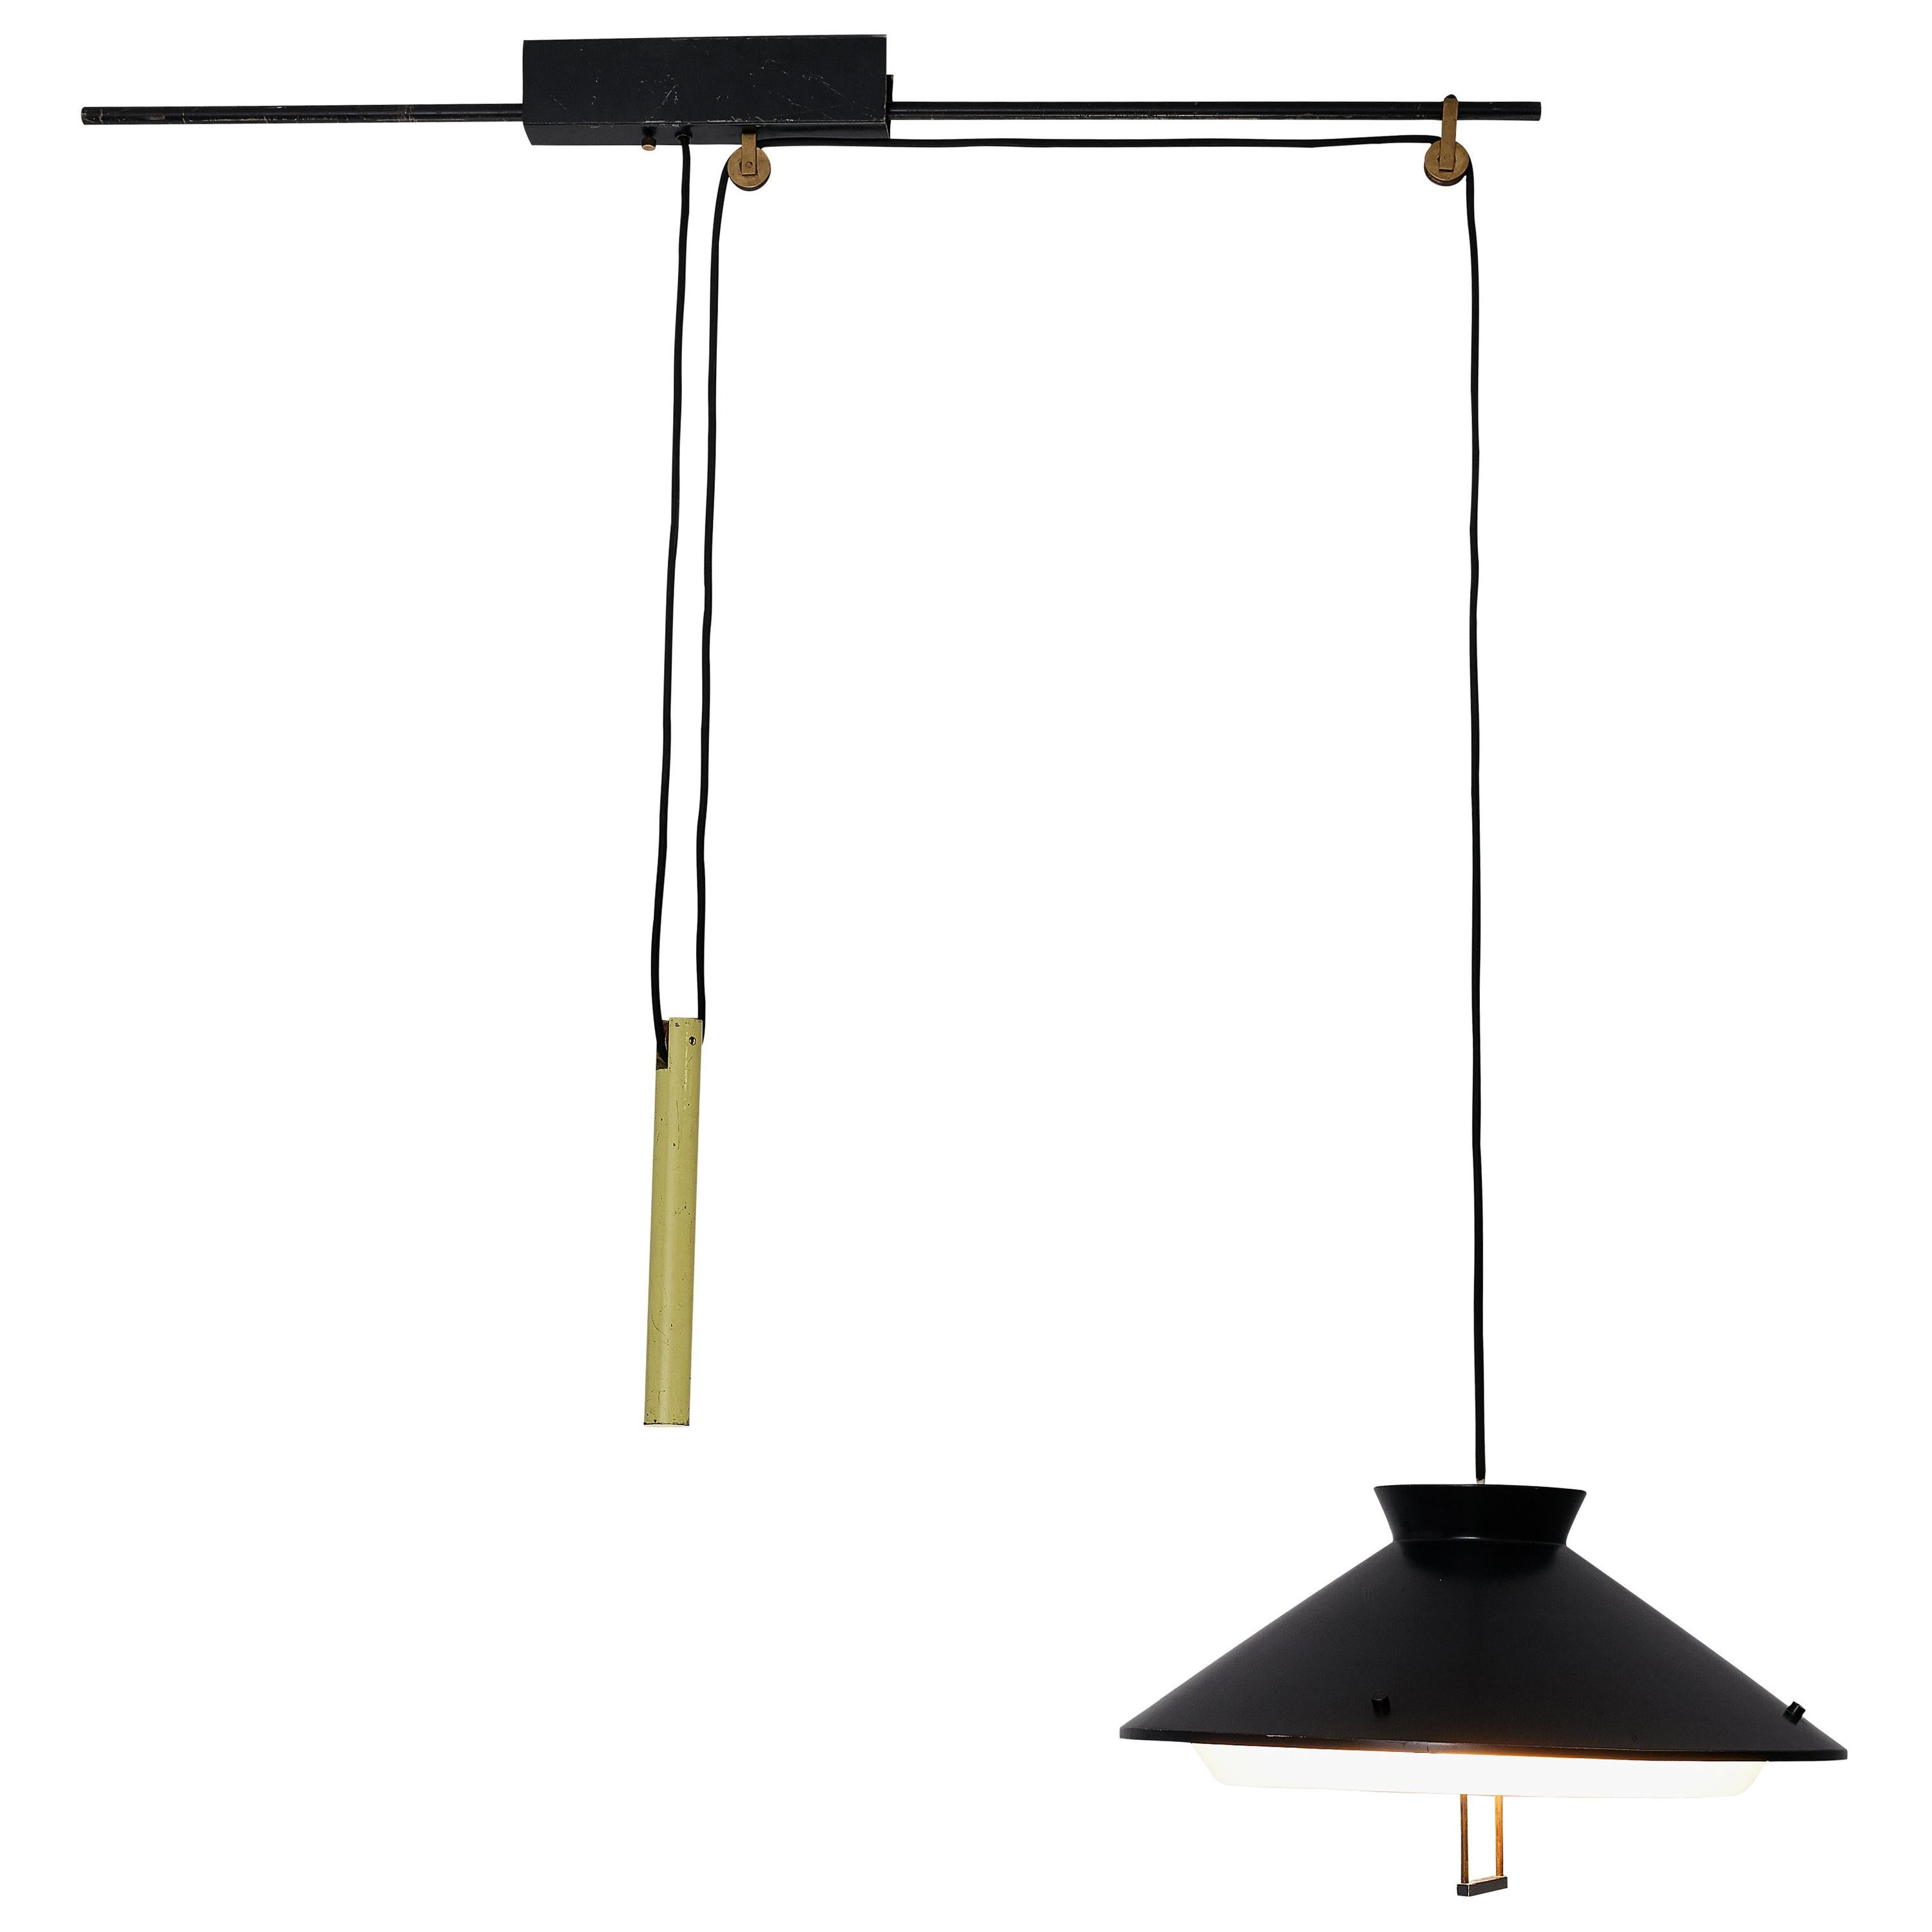 Italian Adjustable Counterweight Pendant Lamp